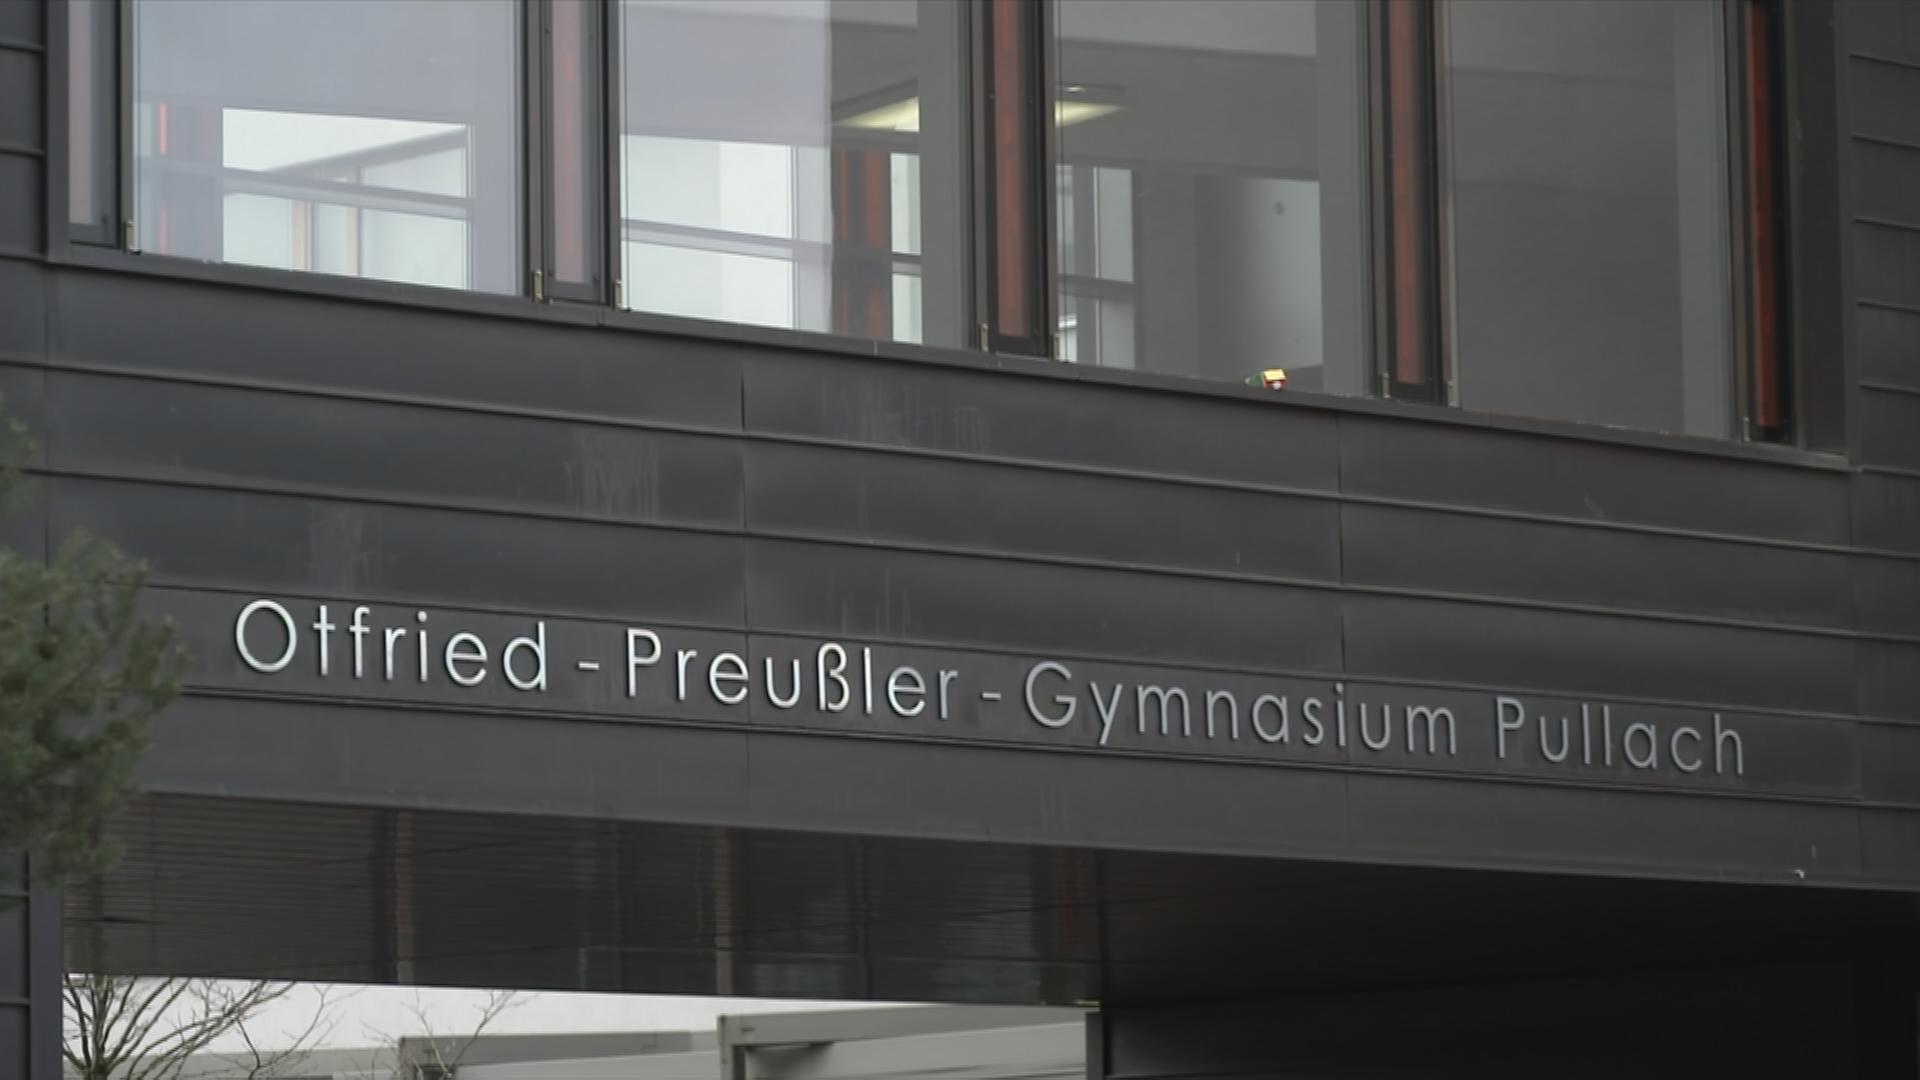 Gebäude Otfried-Preußler-Gymnasium Pullach